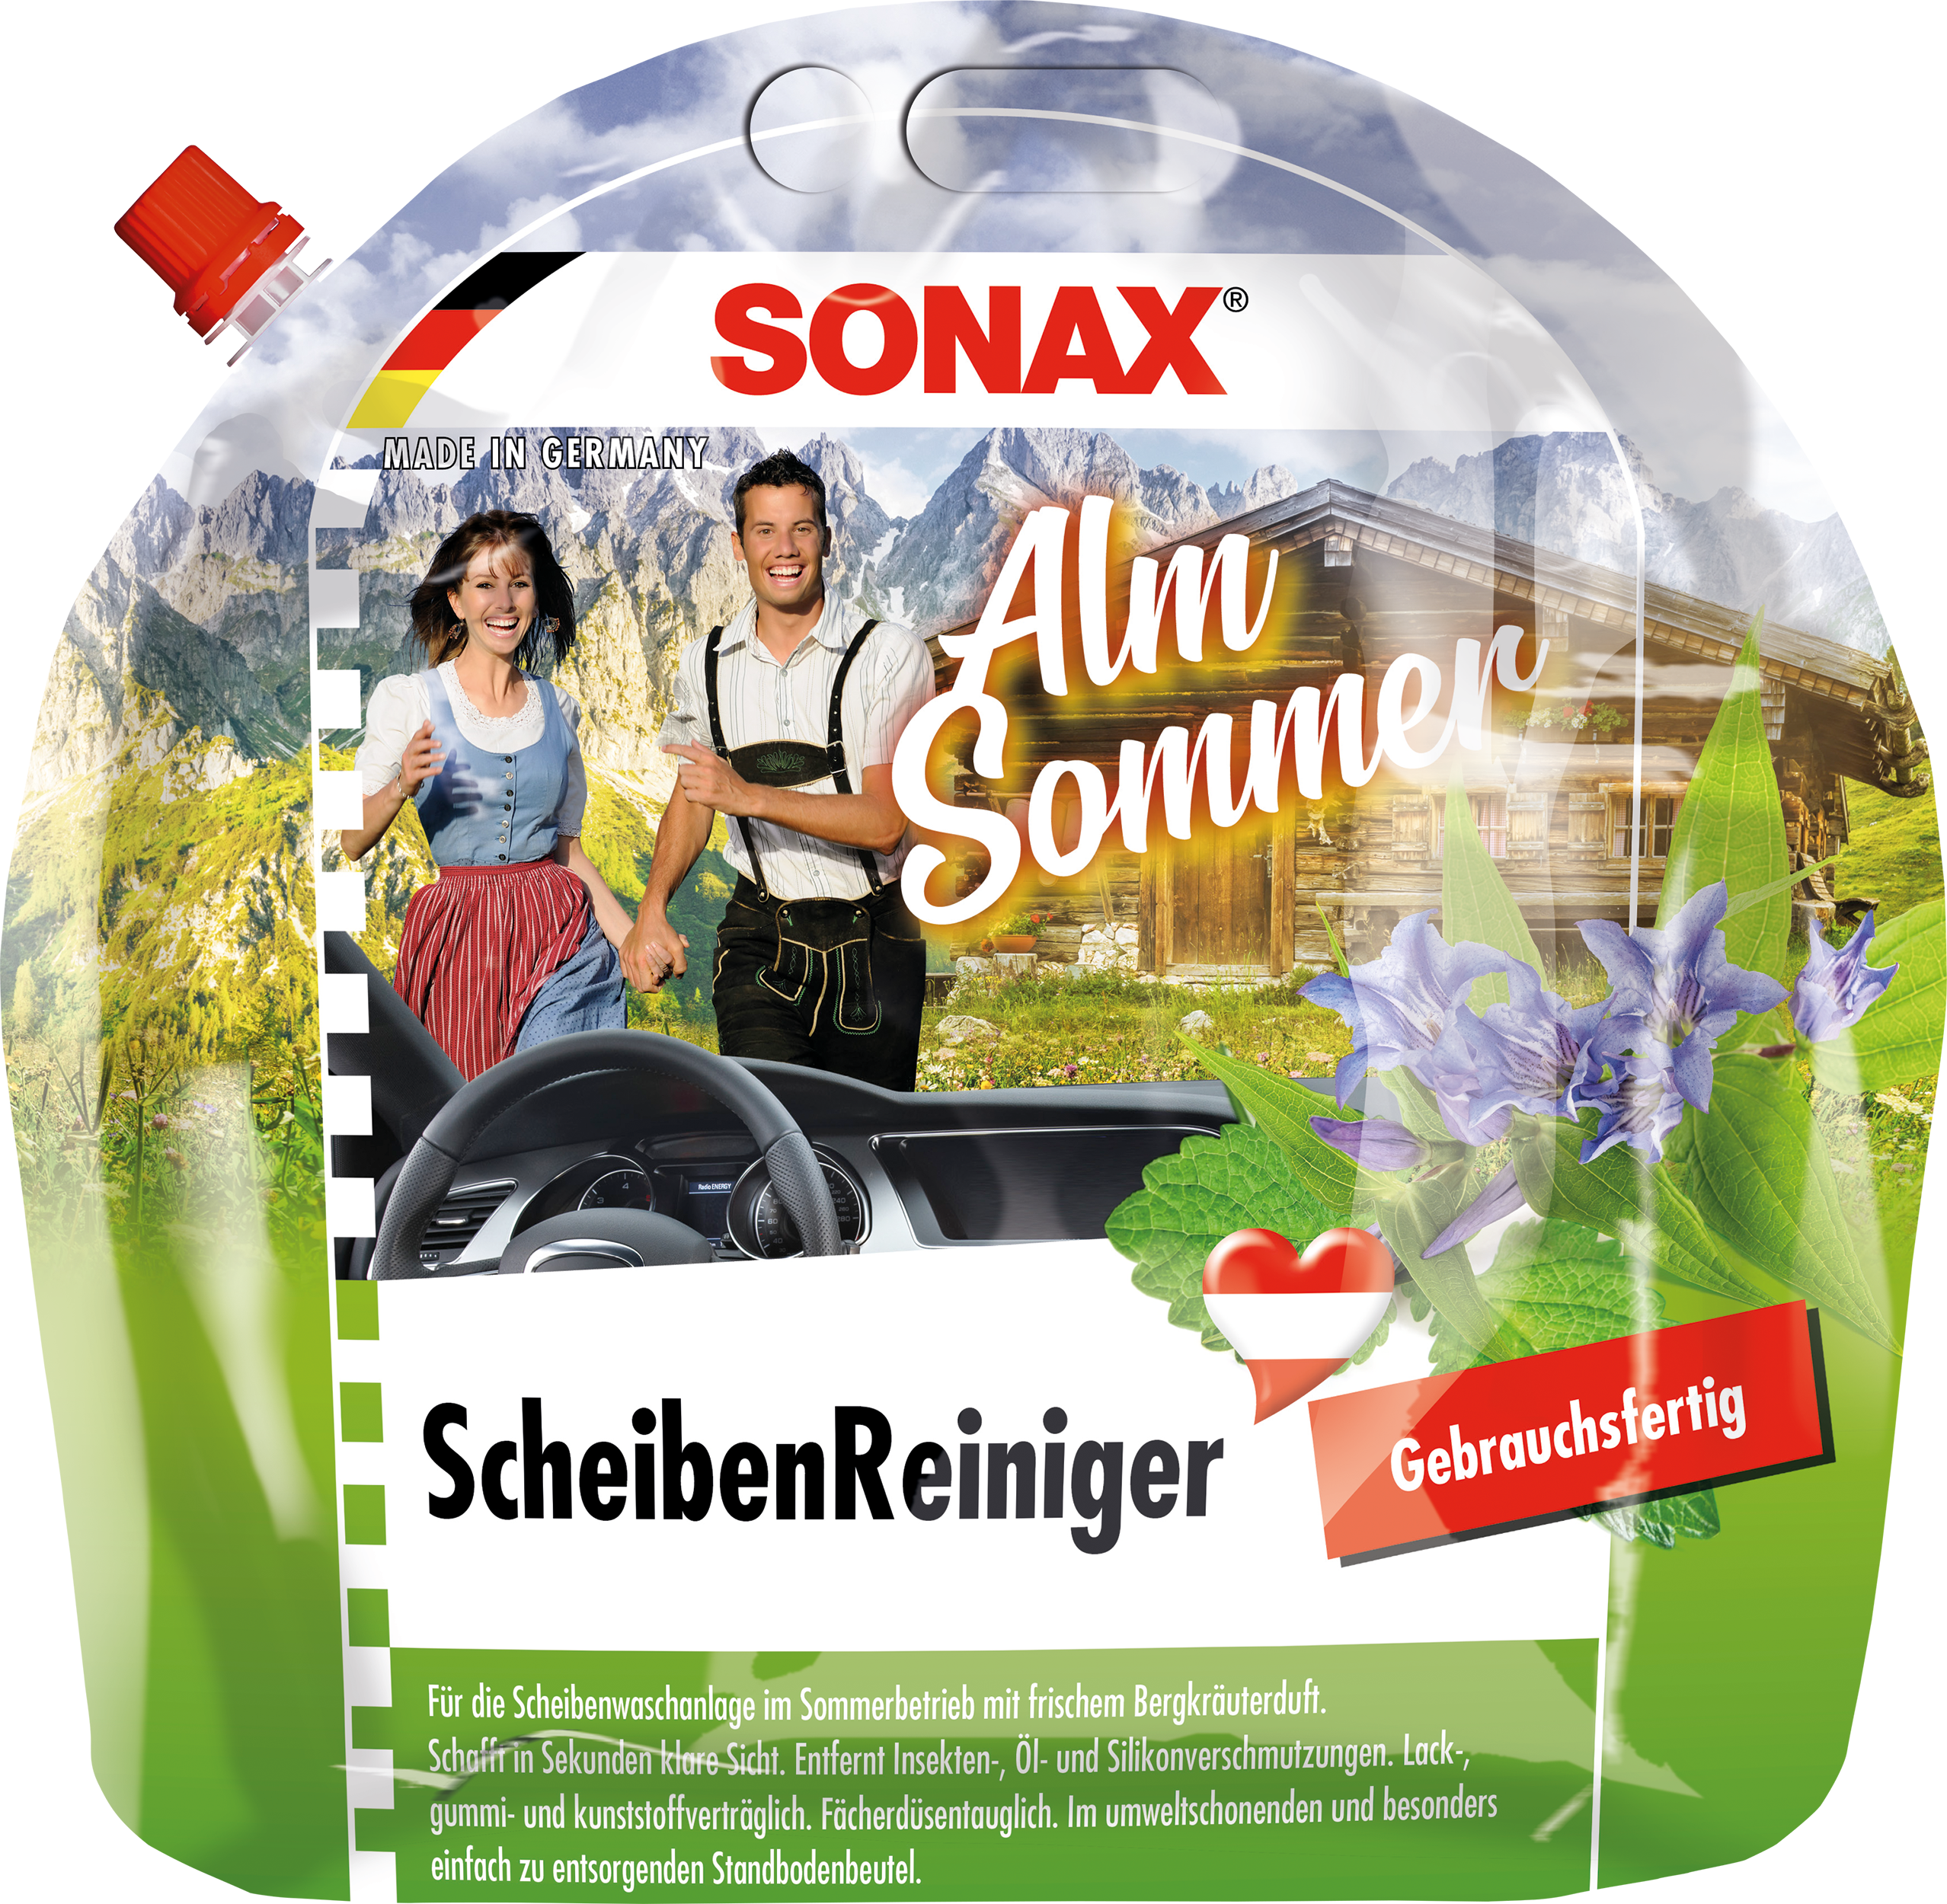 Sonax ScheibenReiniger gebrauchsfertig Lemon Rocks 5 Liter, Glas und  Scheinwerfer, Reinigung & Pflege